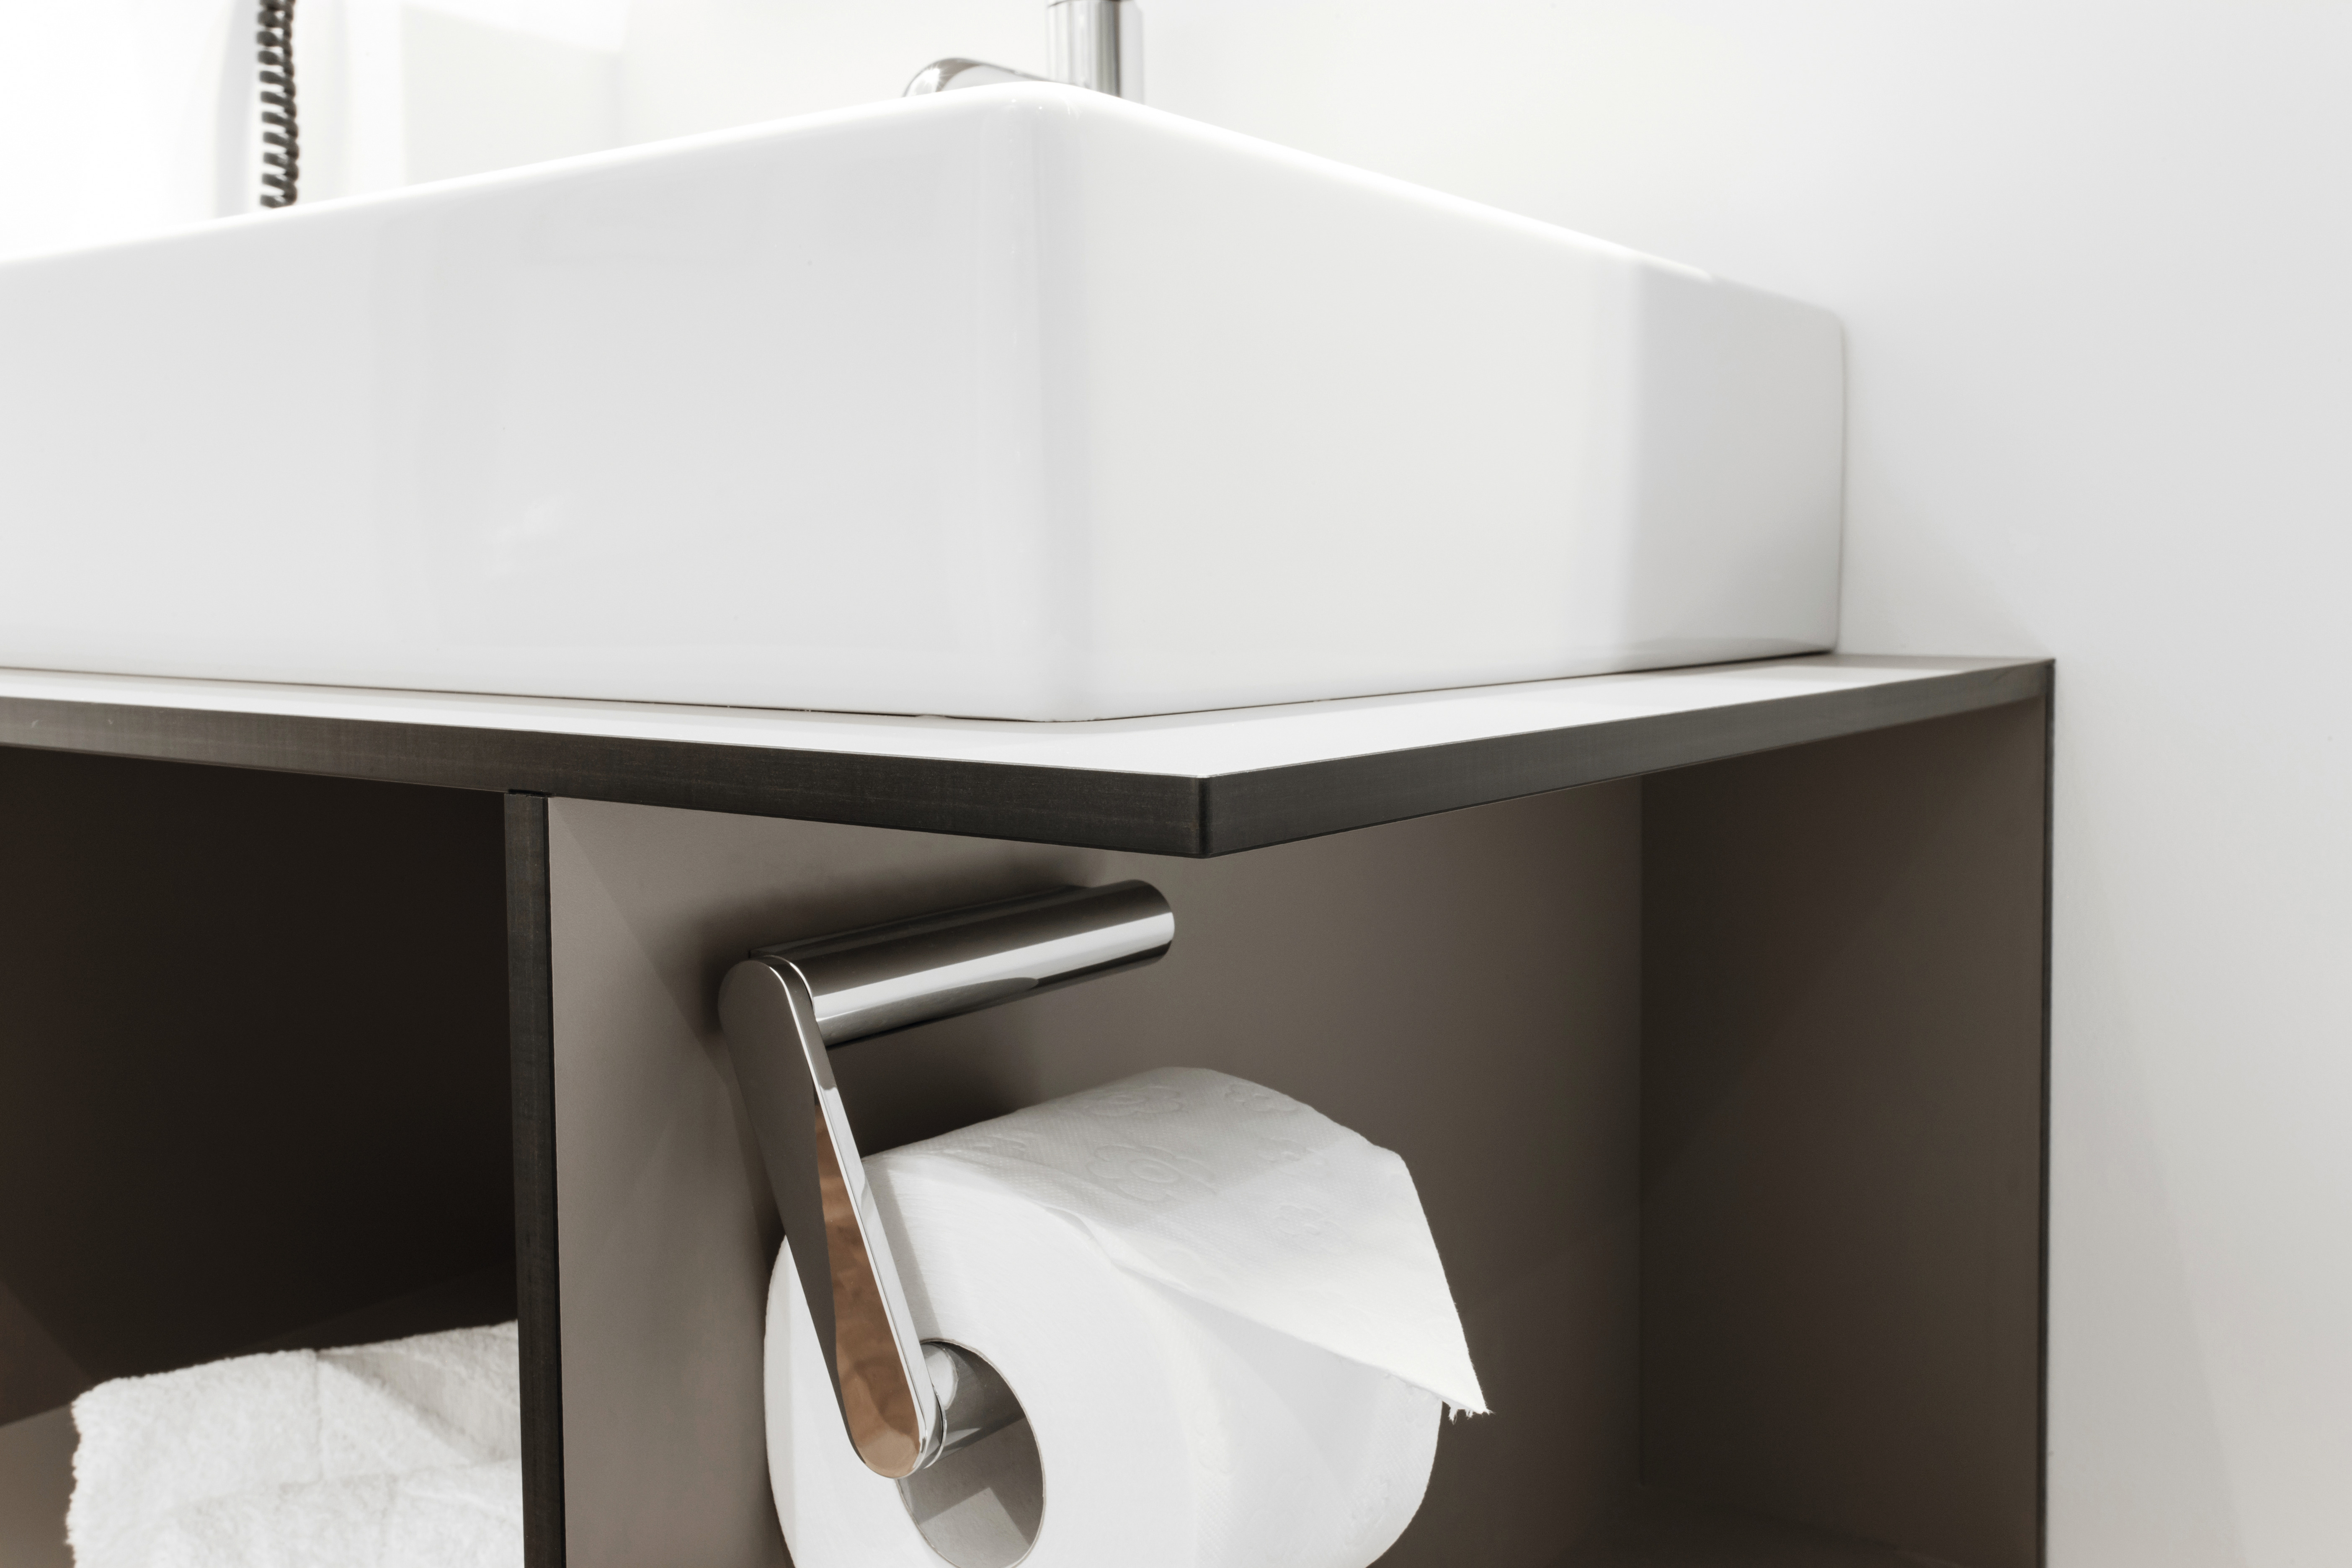 Speciaal voor douchewanden en wastafels zijn EGGER compactlaminaatplaten heel geschikt.